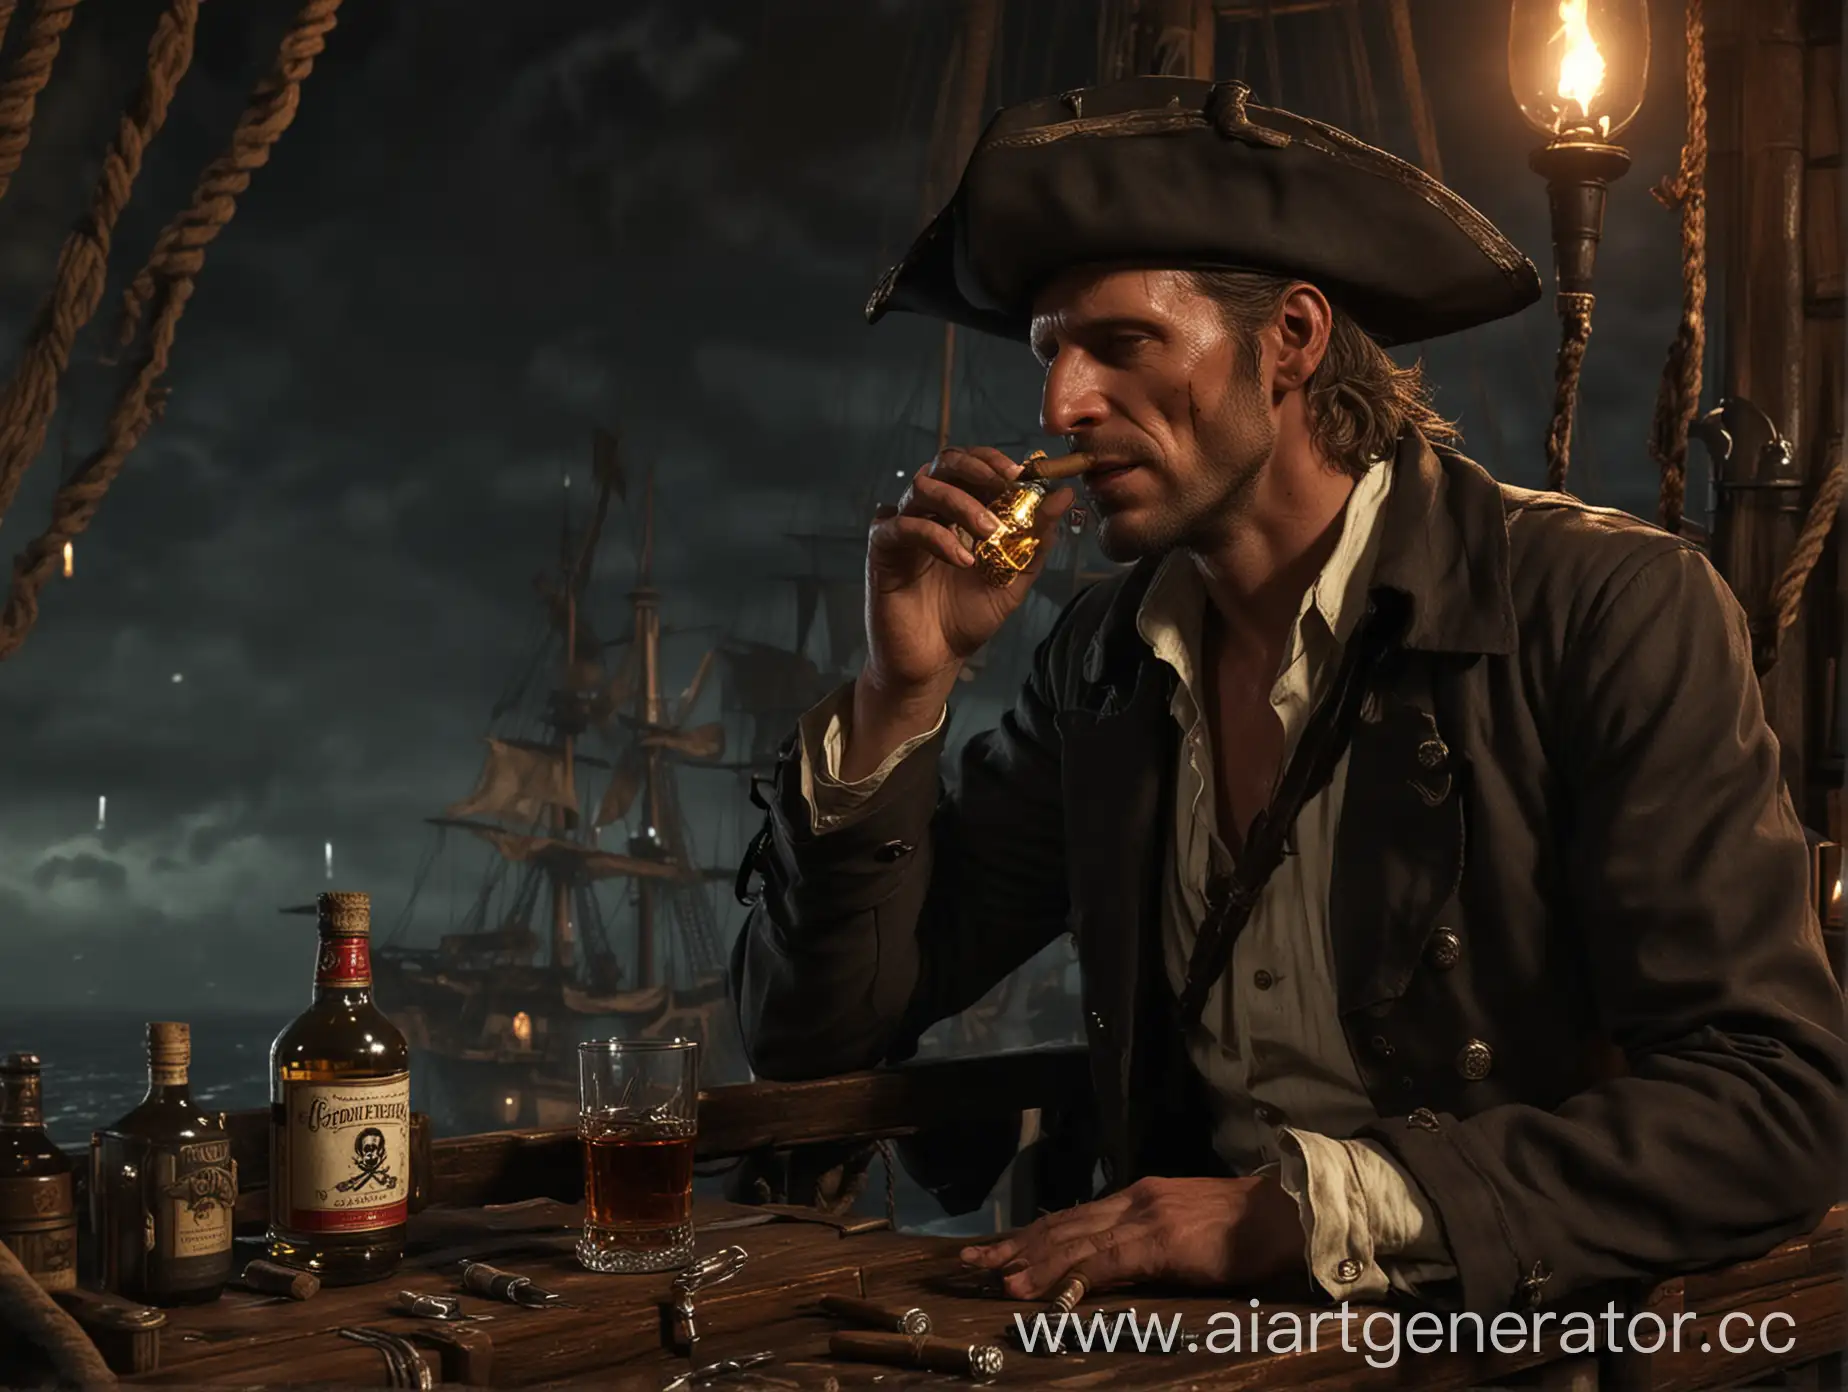 Ник Валентайн с сигарой и бутылкой рома на борту пиратского корабля пьëт и вспоминает институт